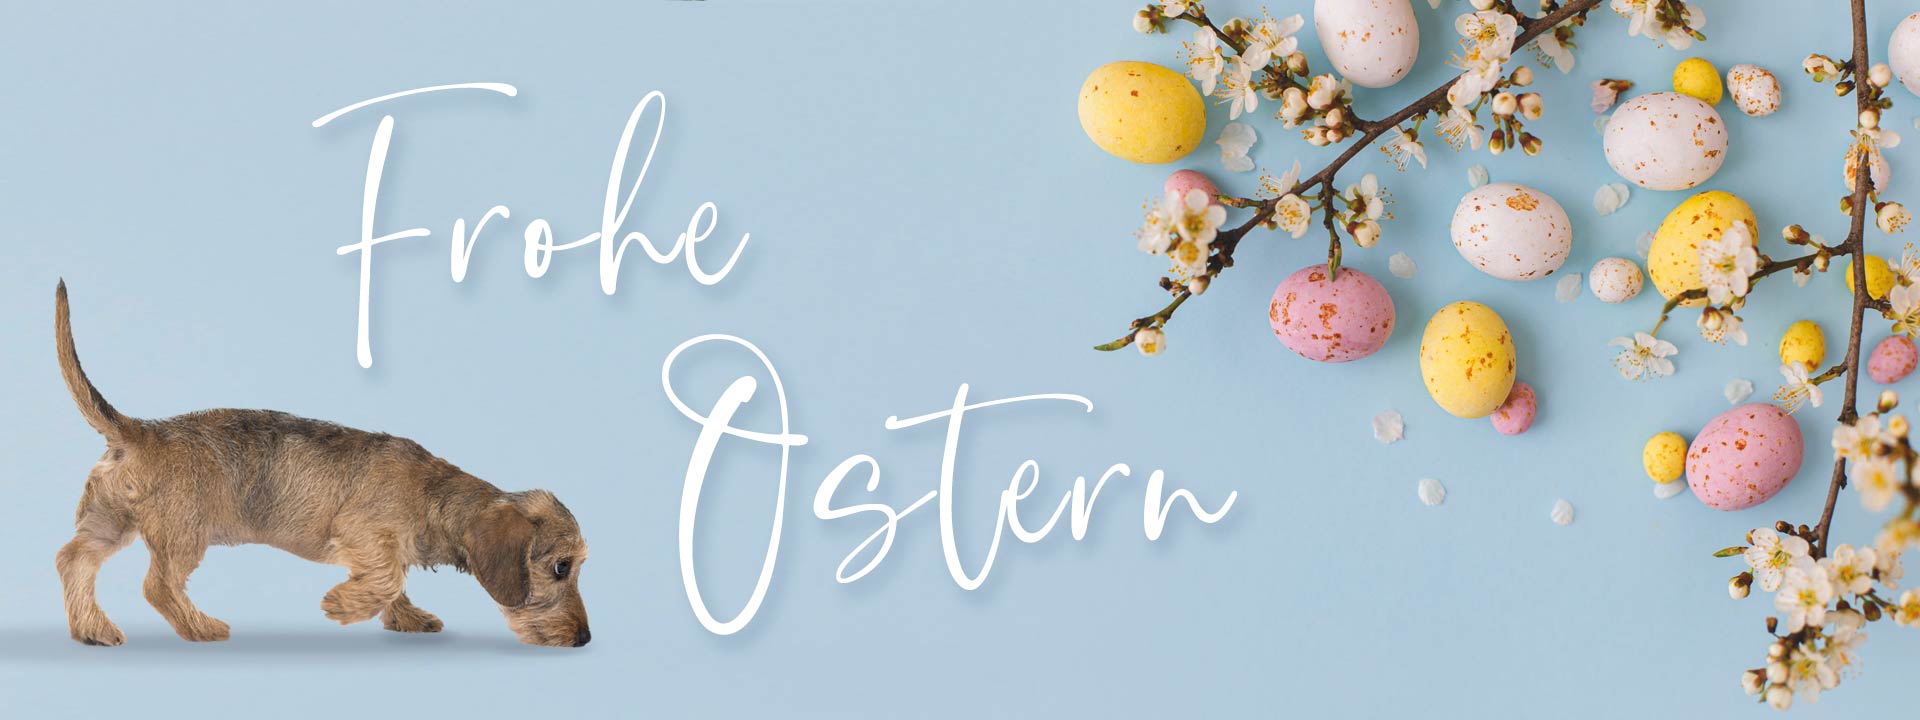 Wir wünschen Ihnen ein frohes Osterfest